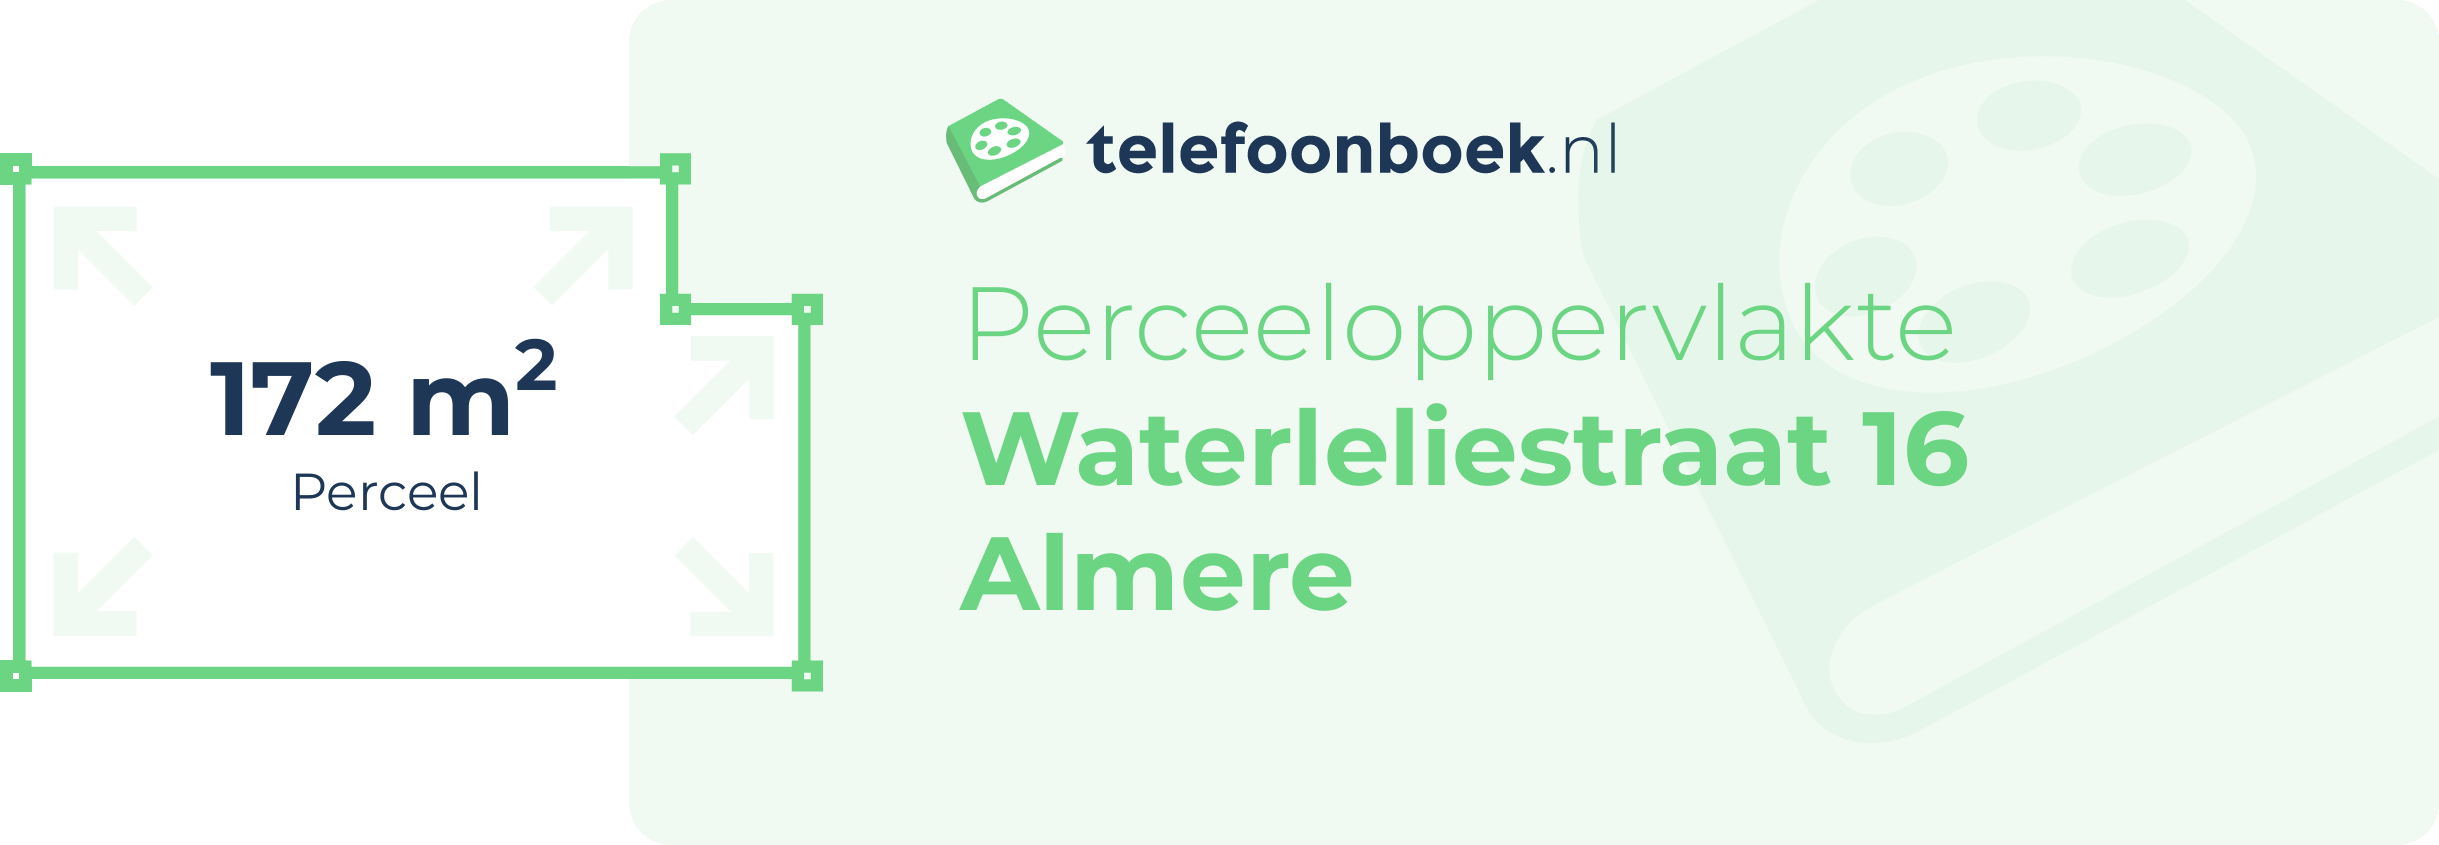 Perceeloppervlakte Waterleliestraat 16 Almere